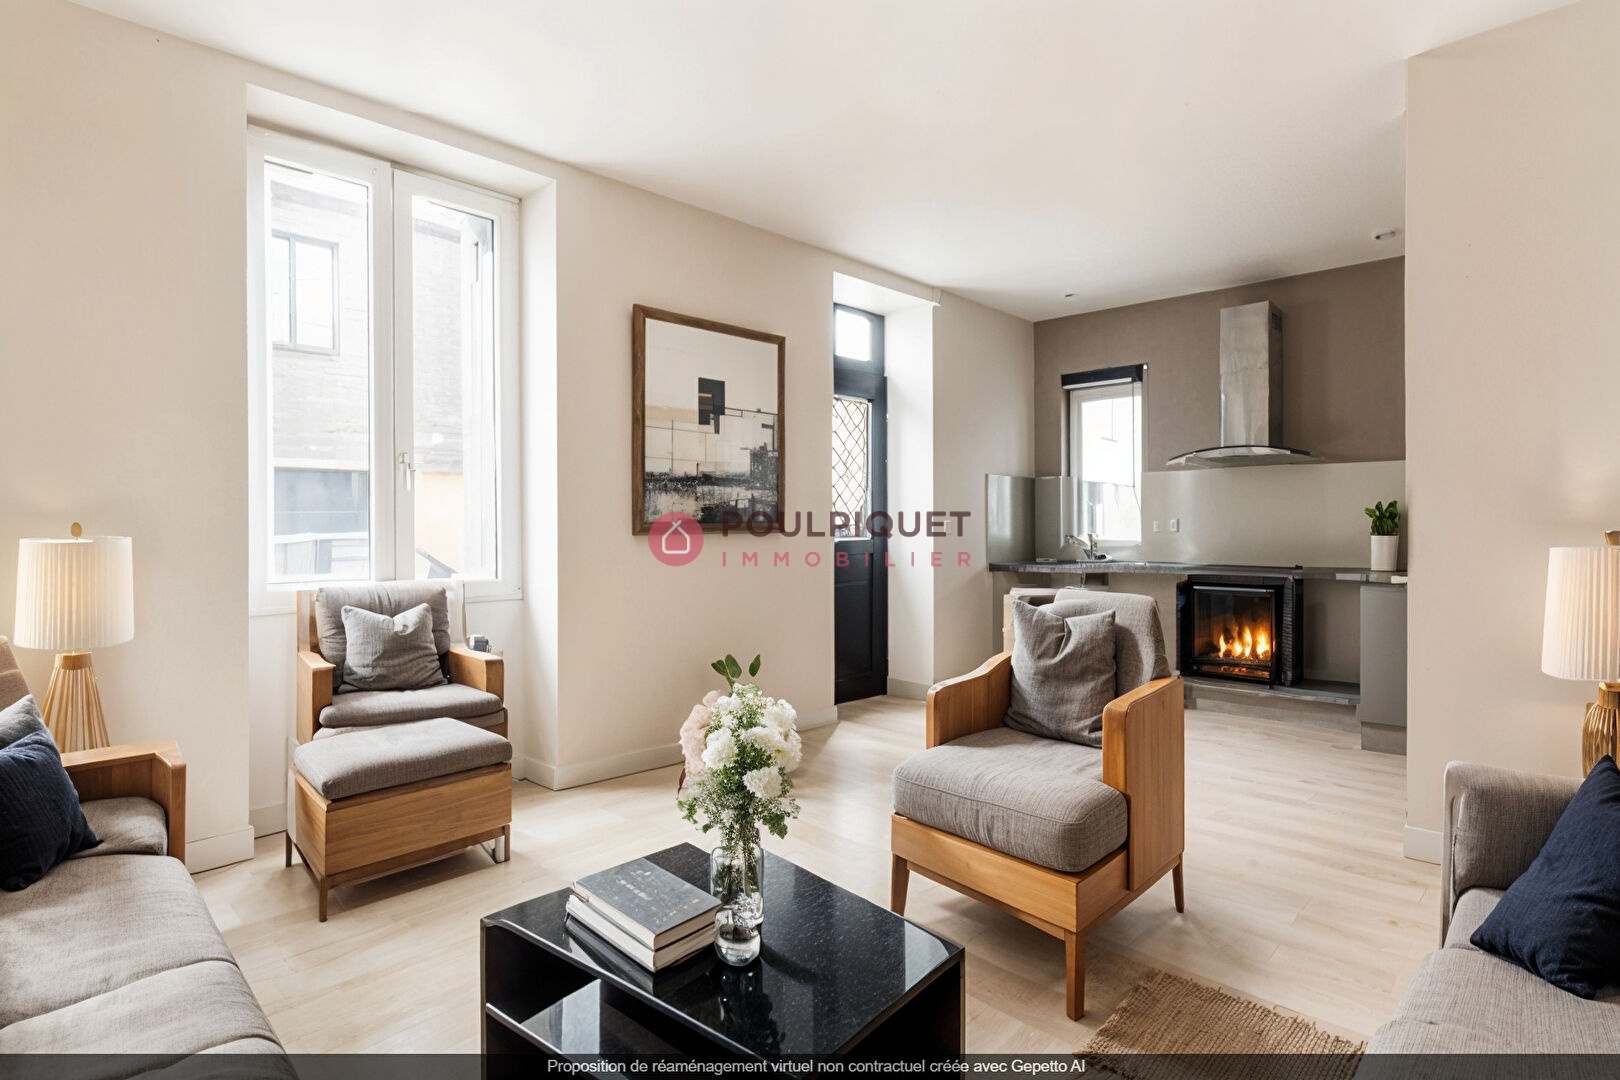 Vente Appartement 50m² 2 Pièces à Nantes (44100) - Poulpiquet Immobilier